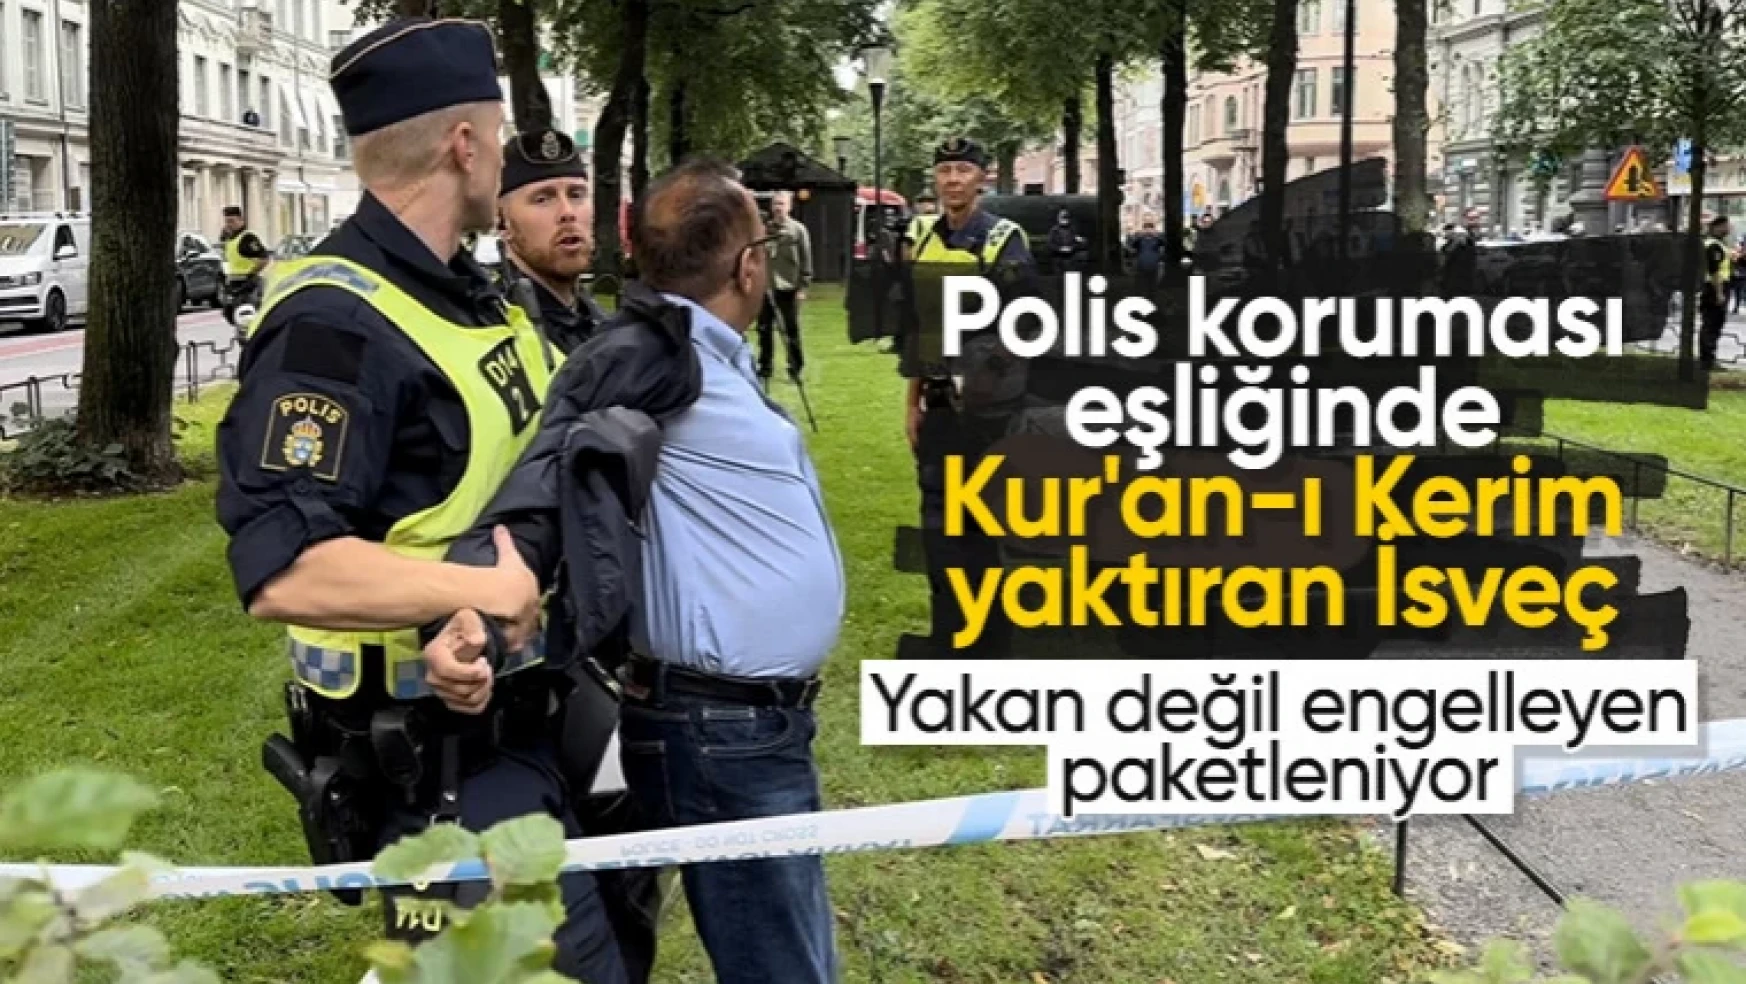 İsveç'te Kur'an-ı Kerim yakılmasına tepki gösterince polis müdahale etti